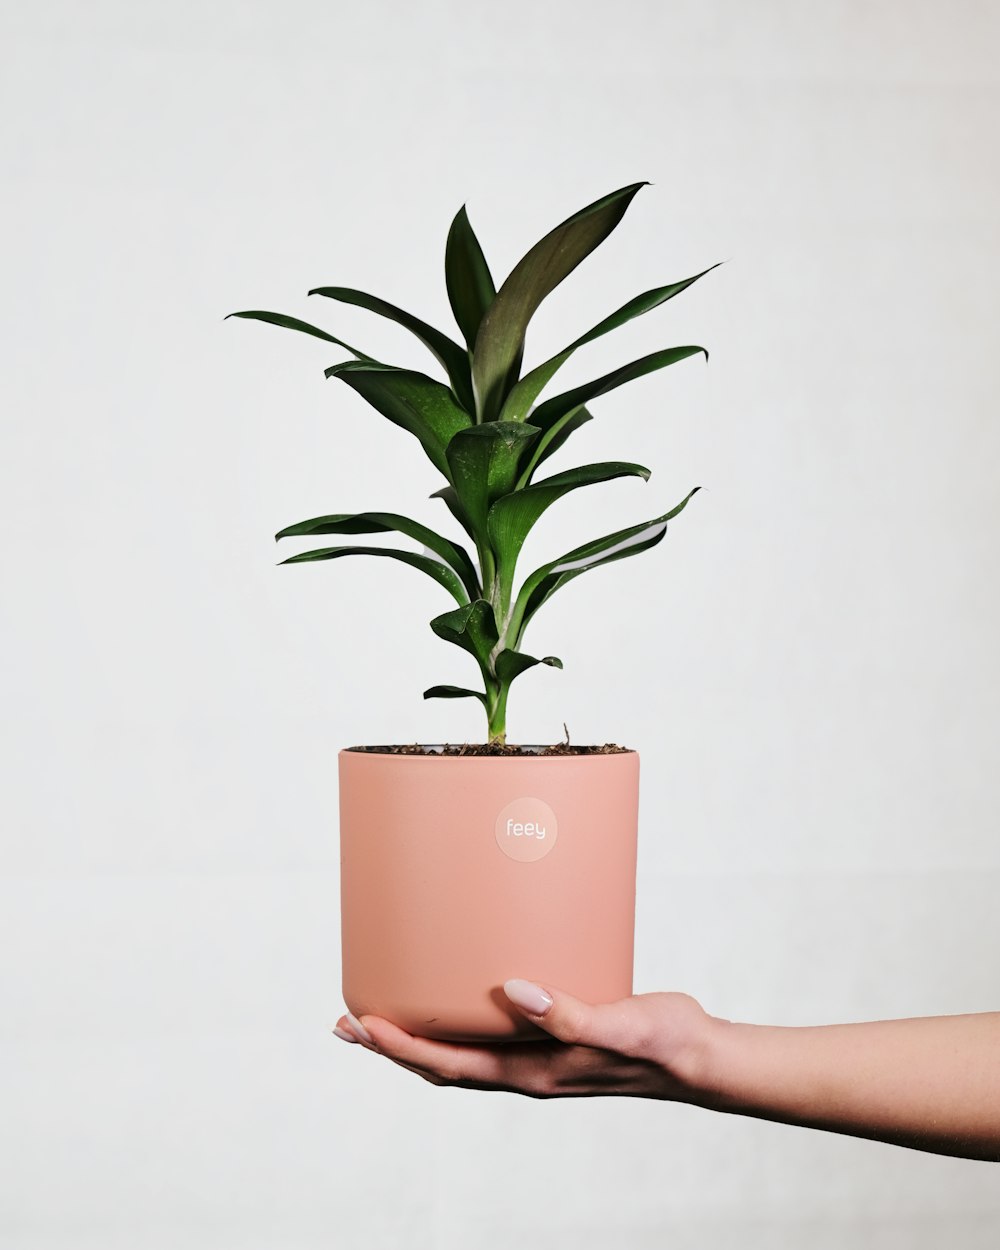 Una persona sosteniendo una planta en una maceta rosa